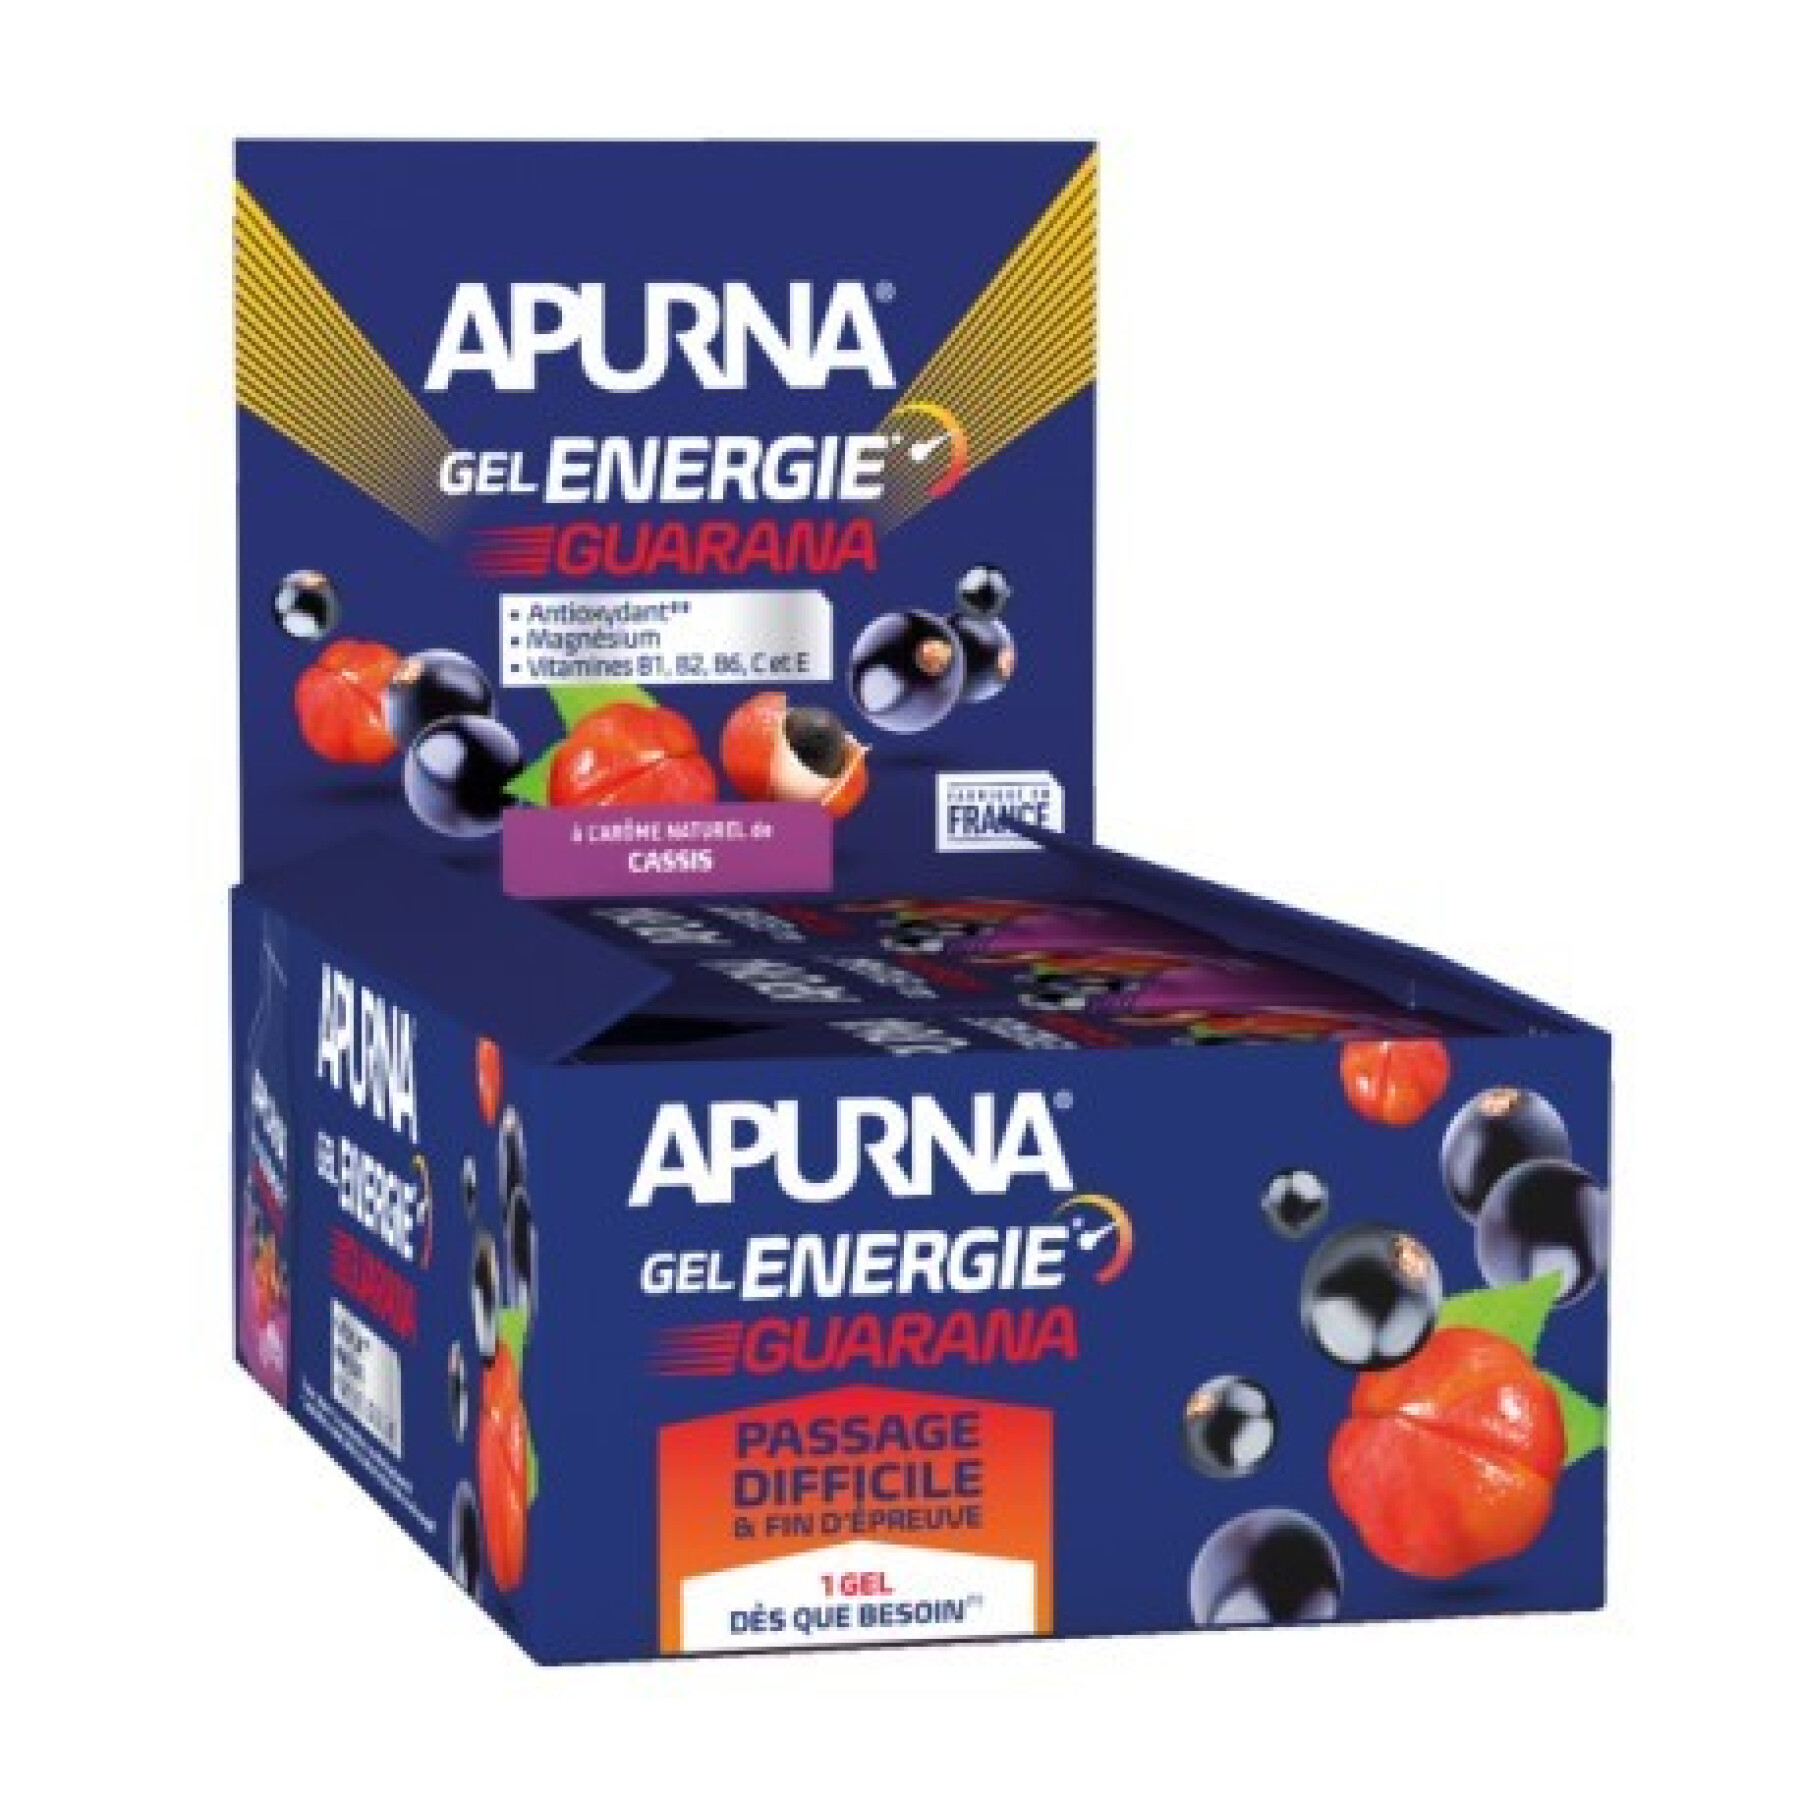 Embalagem de 24 gels Apurna Energie guarana cassis - 35g